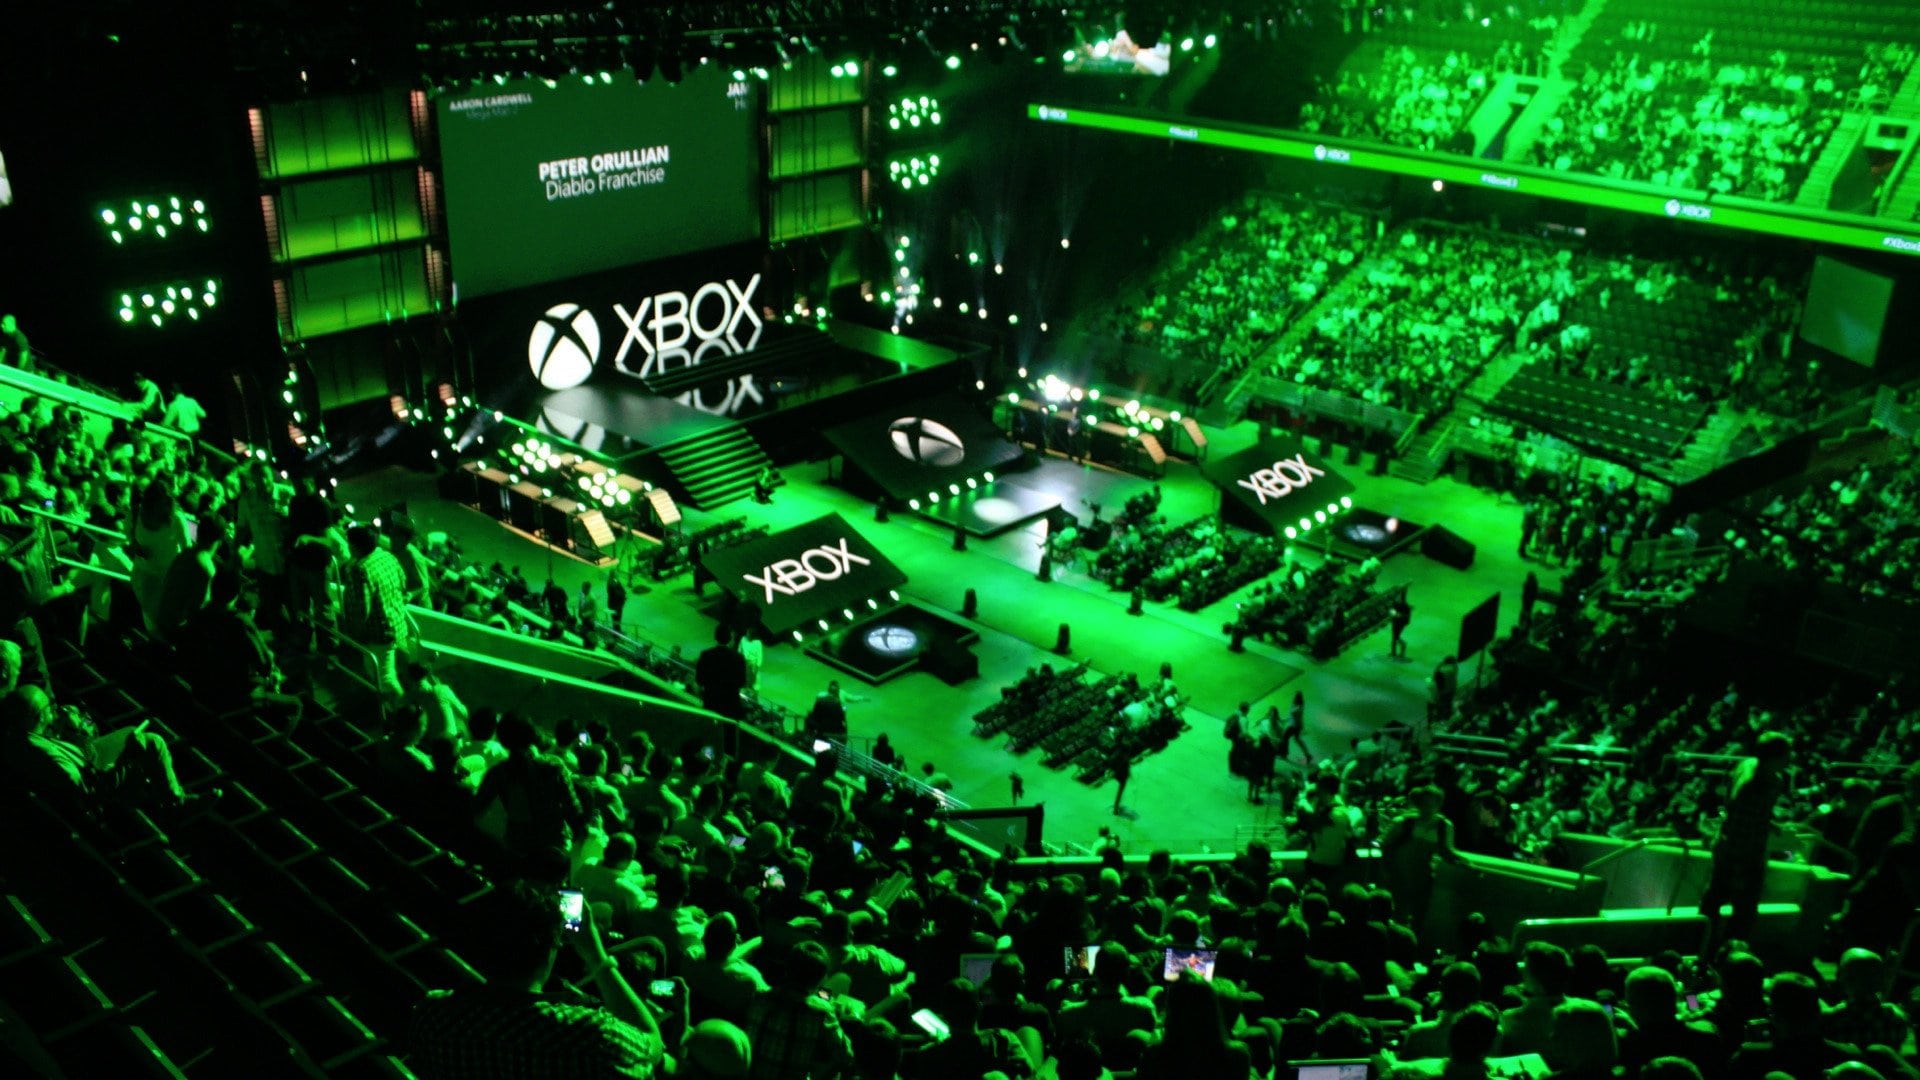 ملخص كامل لأحداث مؤتمر Xbox بمعرض E3 2018